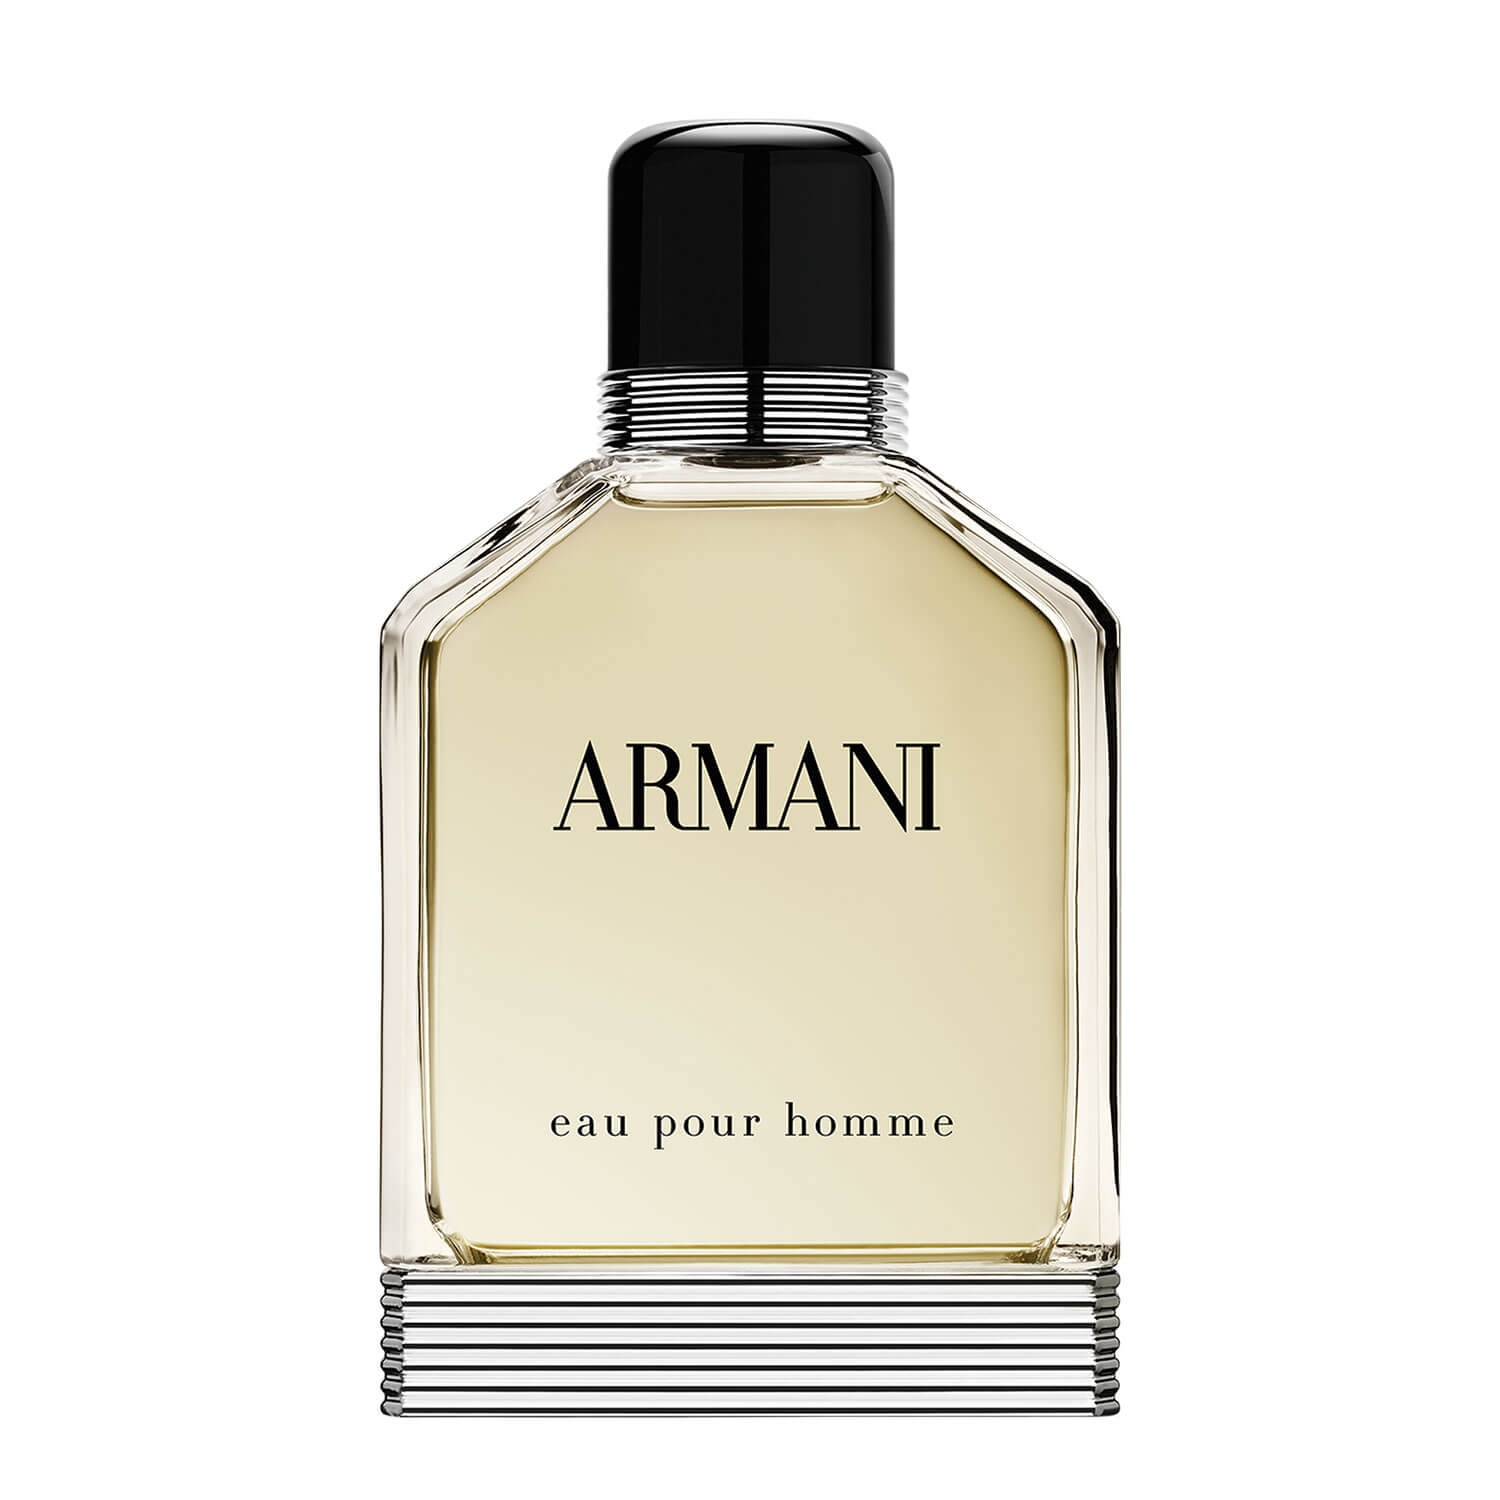 Produktbild von Armani Eaux - Eau Pour Homme Eau de Toilette